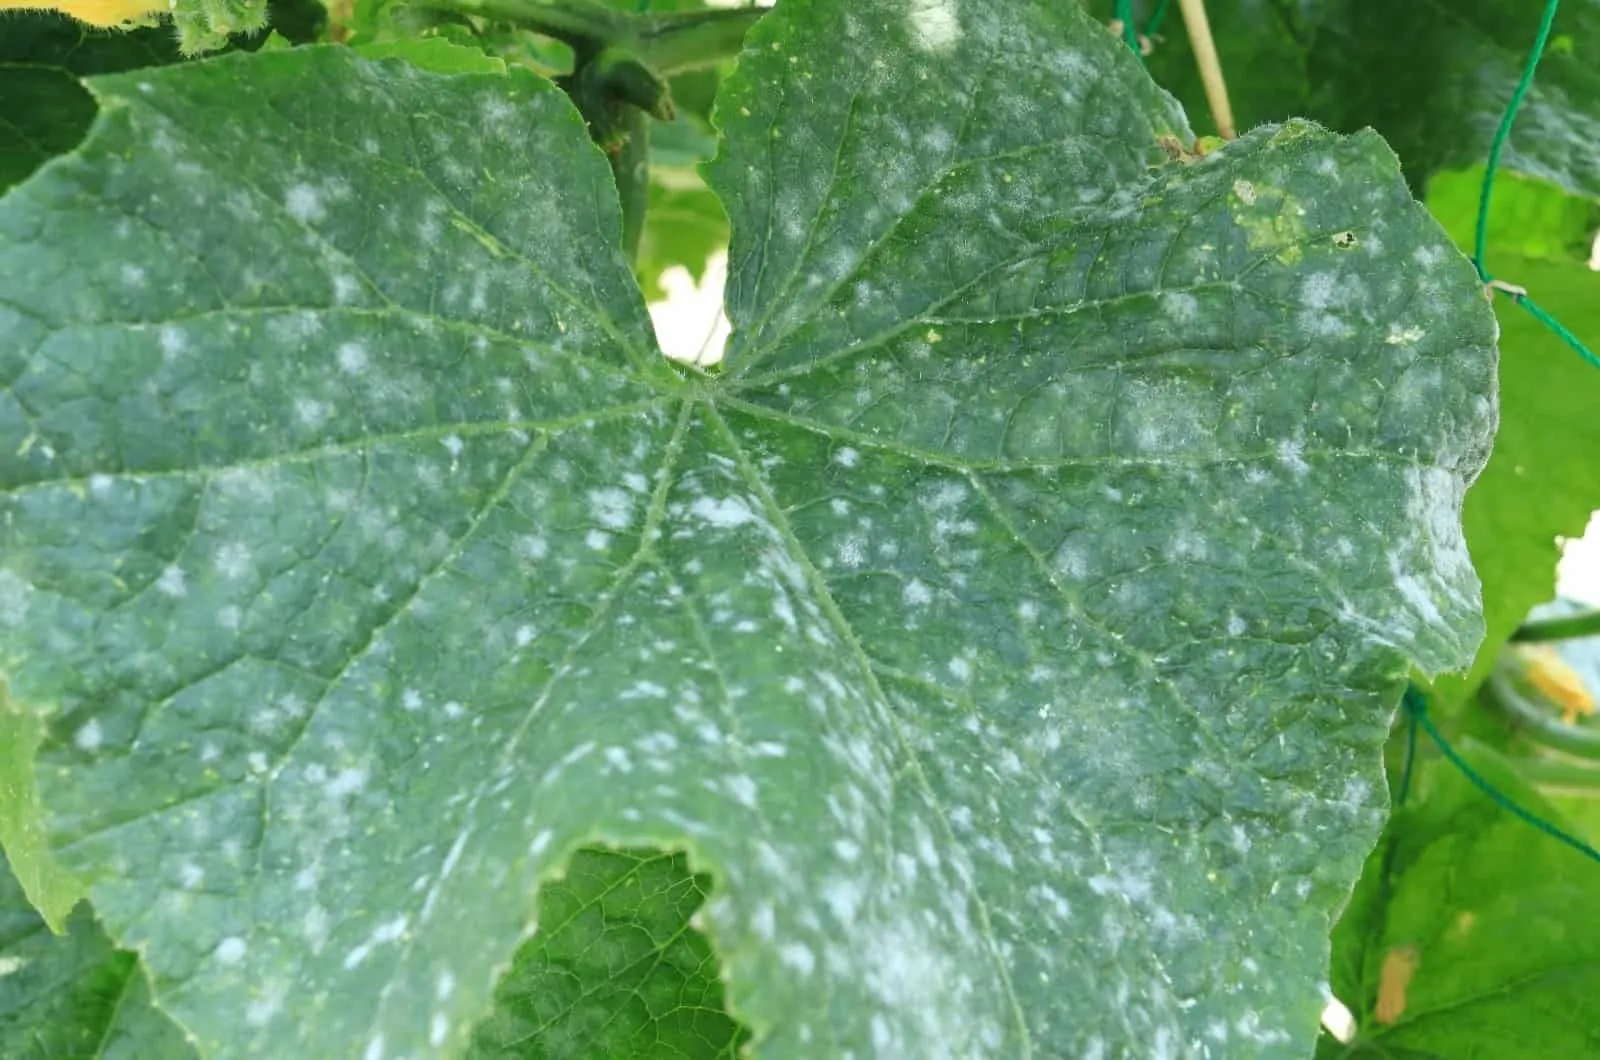 White Spots On Cucumber leaf in garden